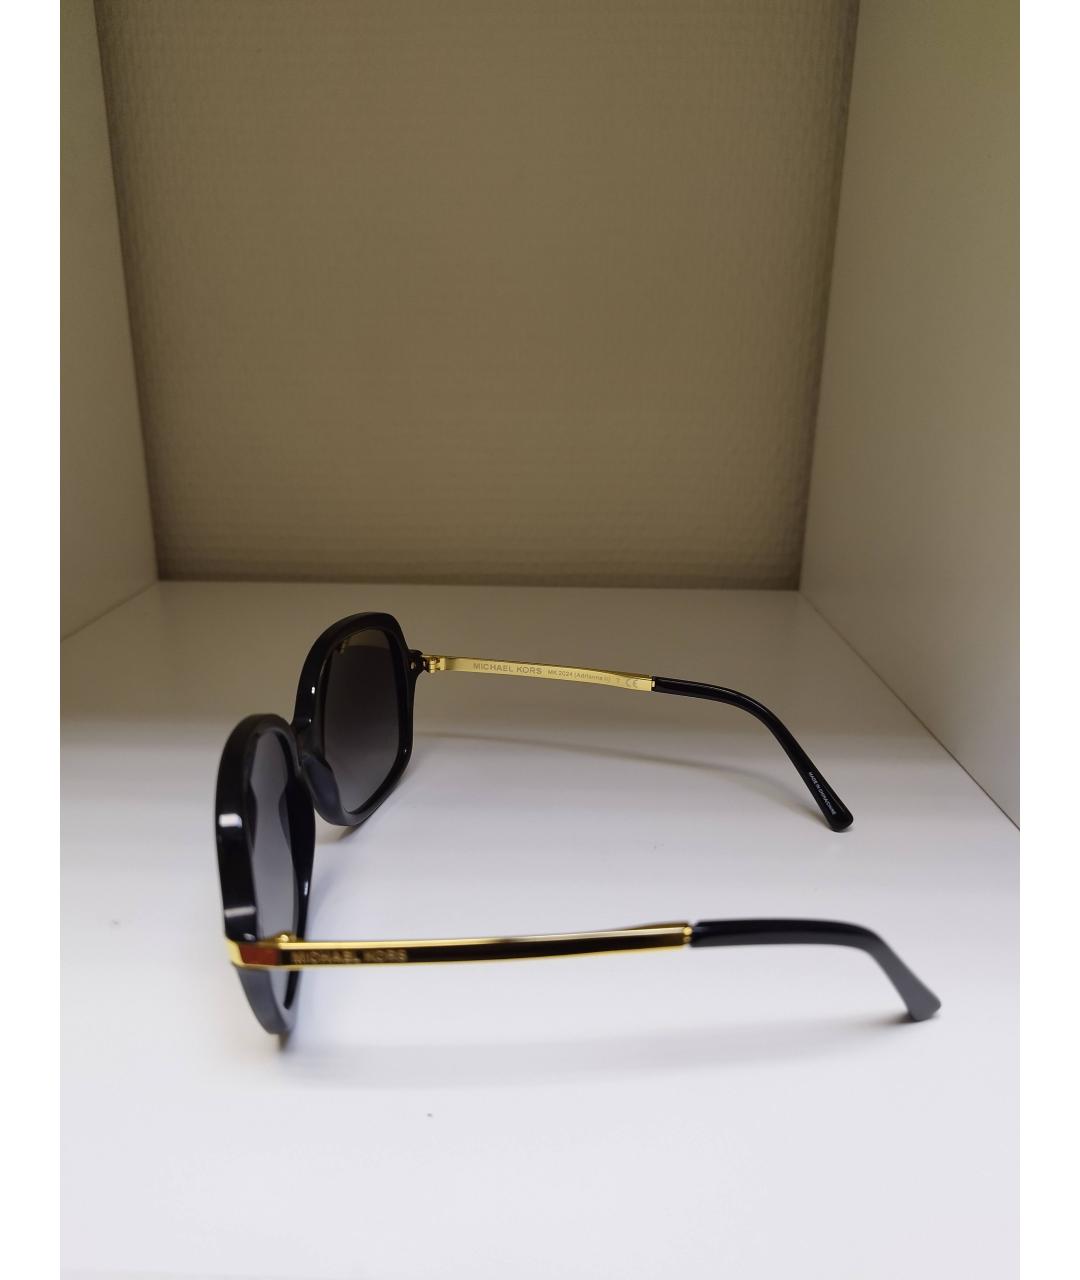 MICHAEL KORS Черные металлические солнцезащитные очки, фото 5